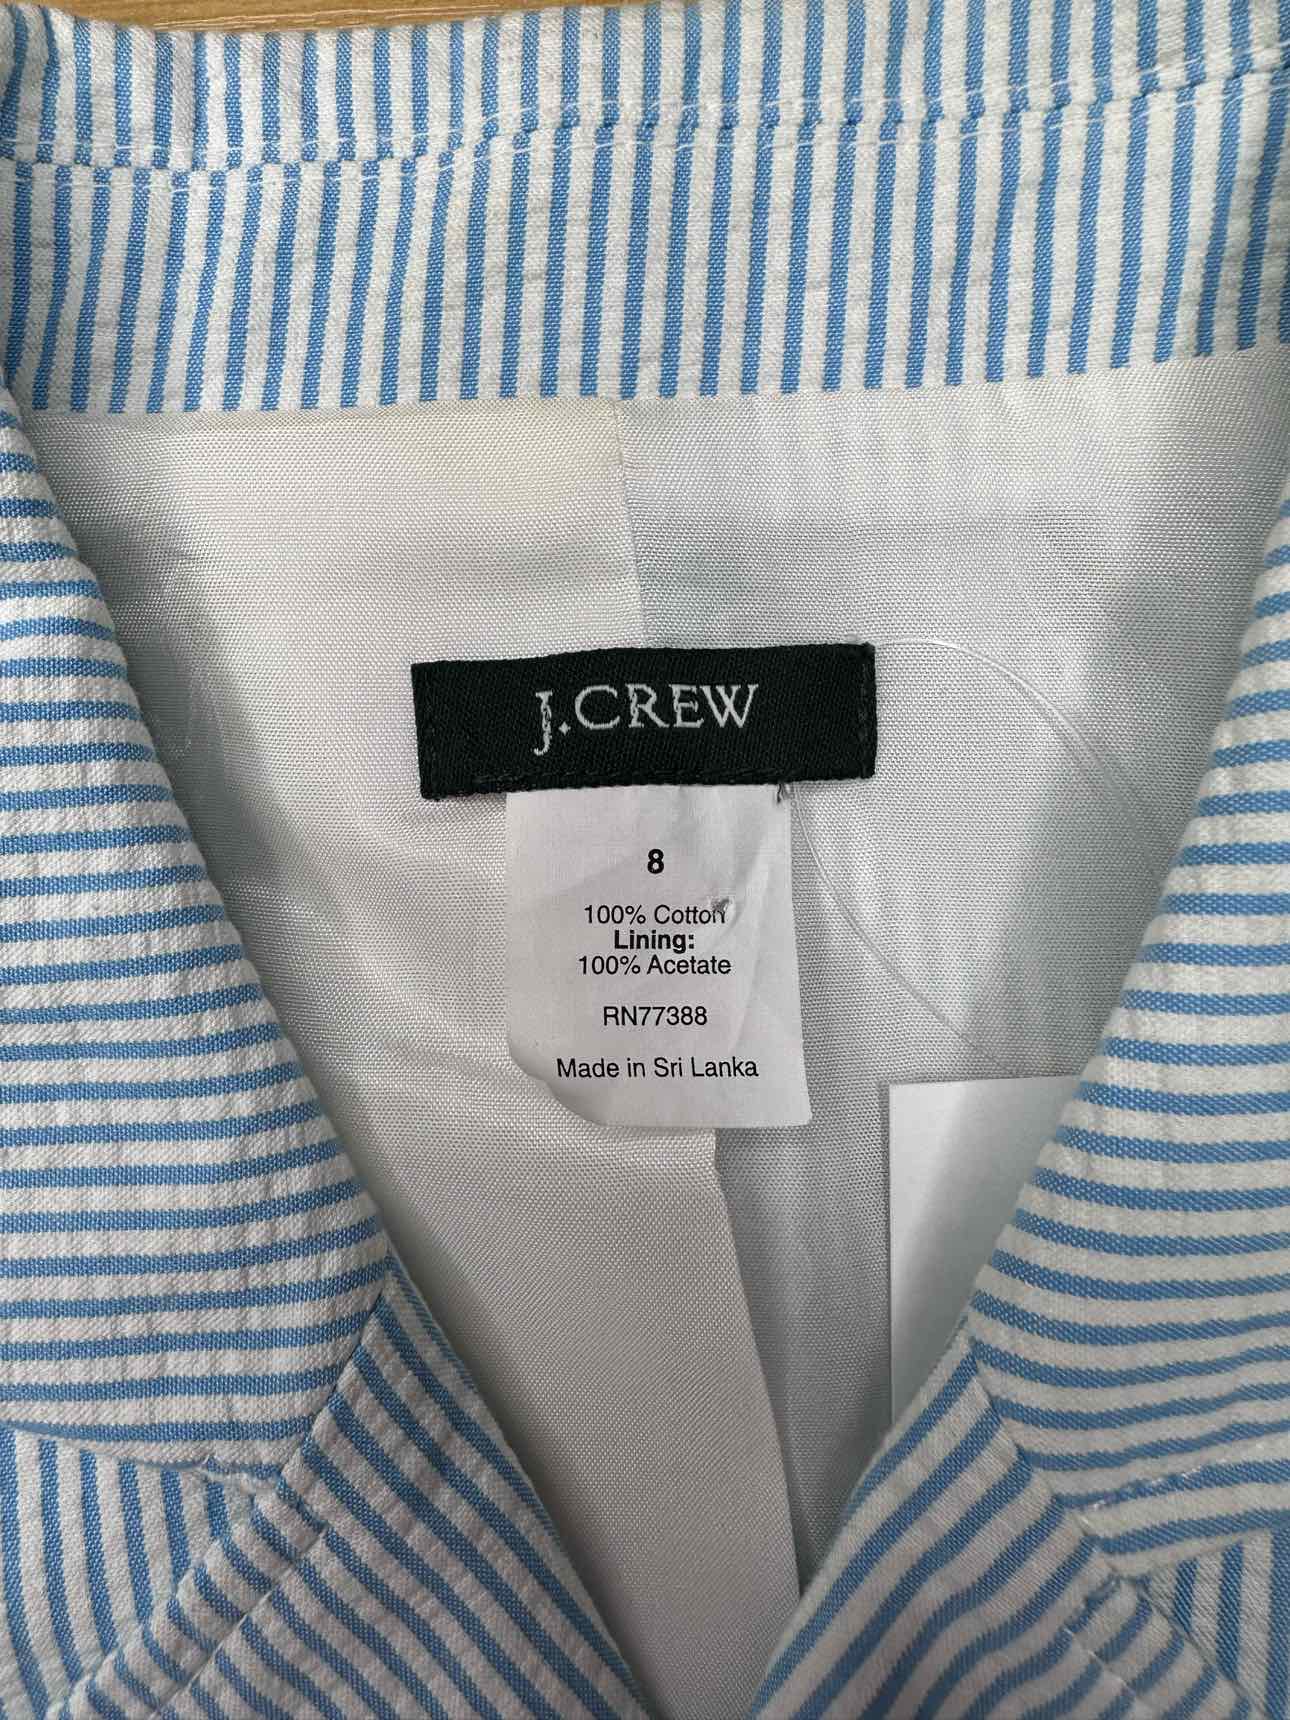 J. Crew Cotton Seersucker Pinstripe Blazer Size 8